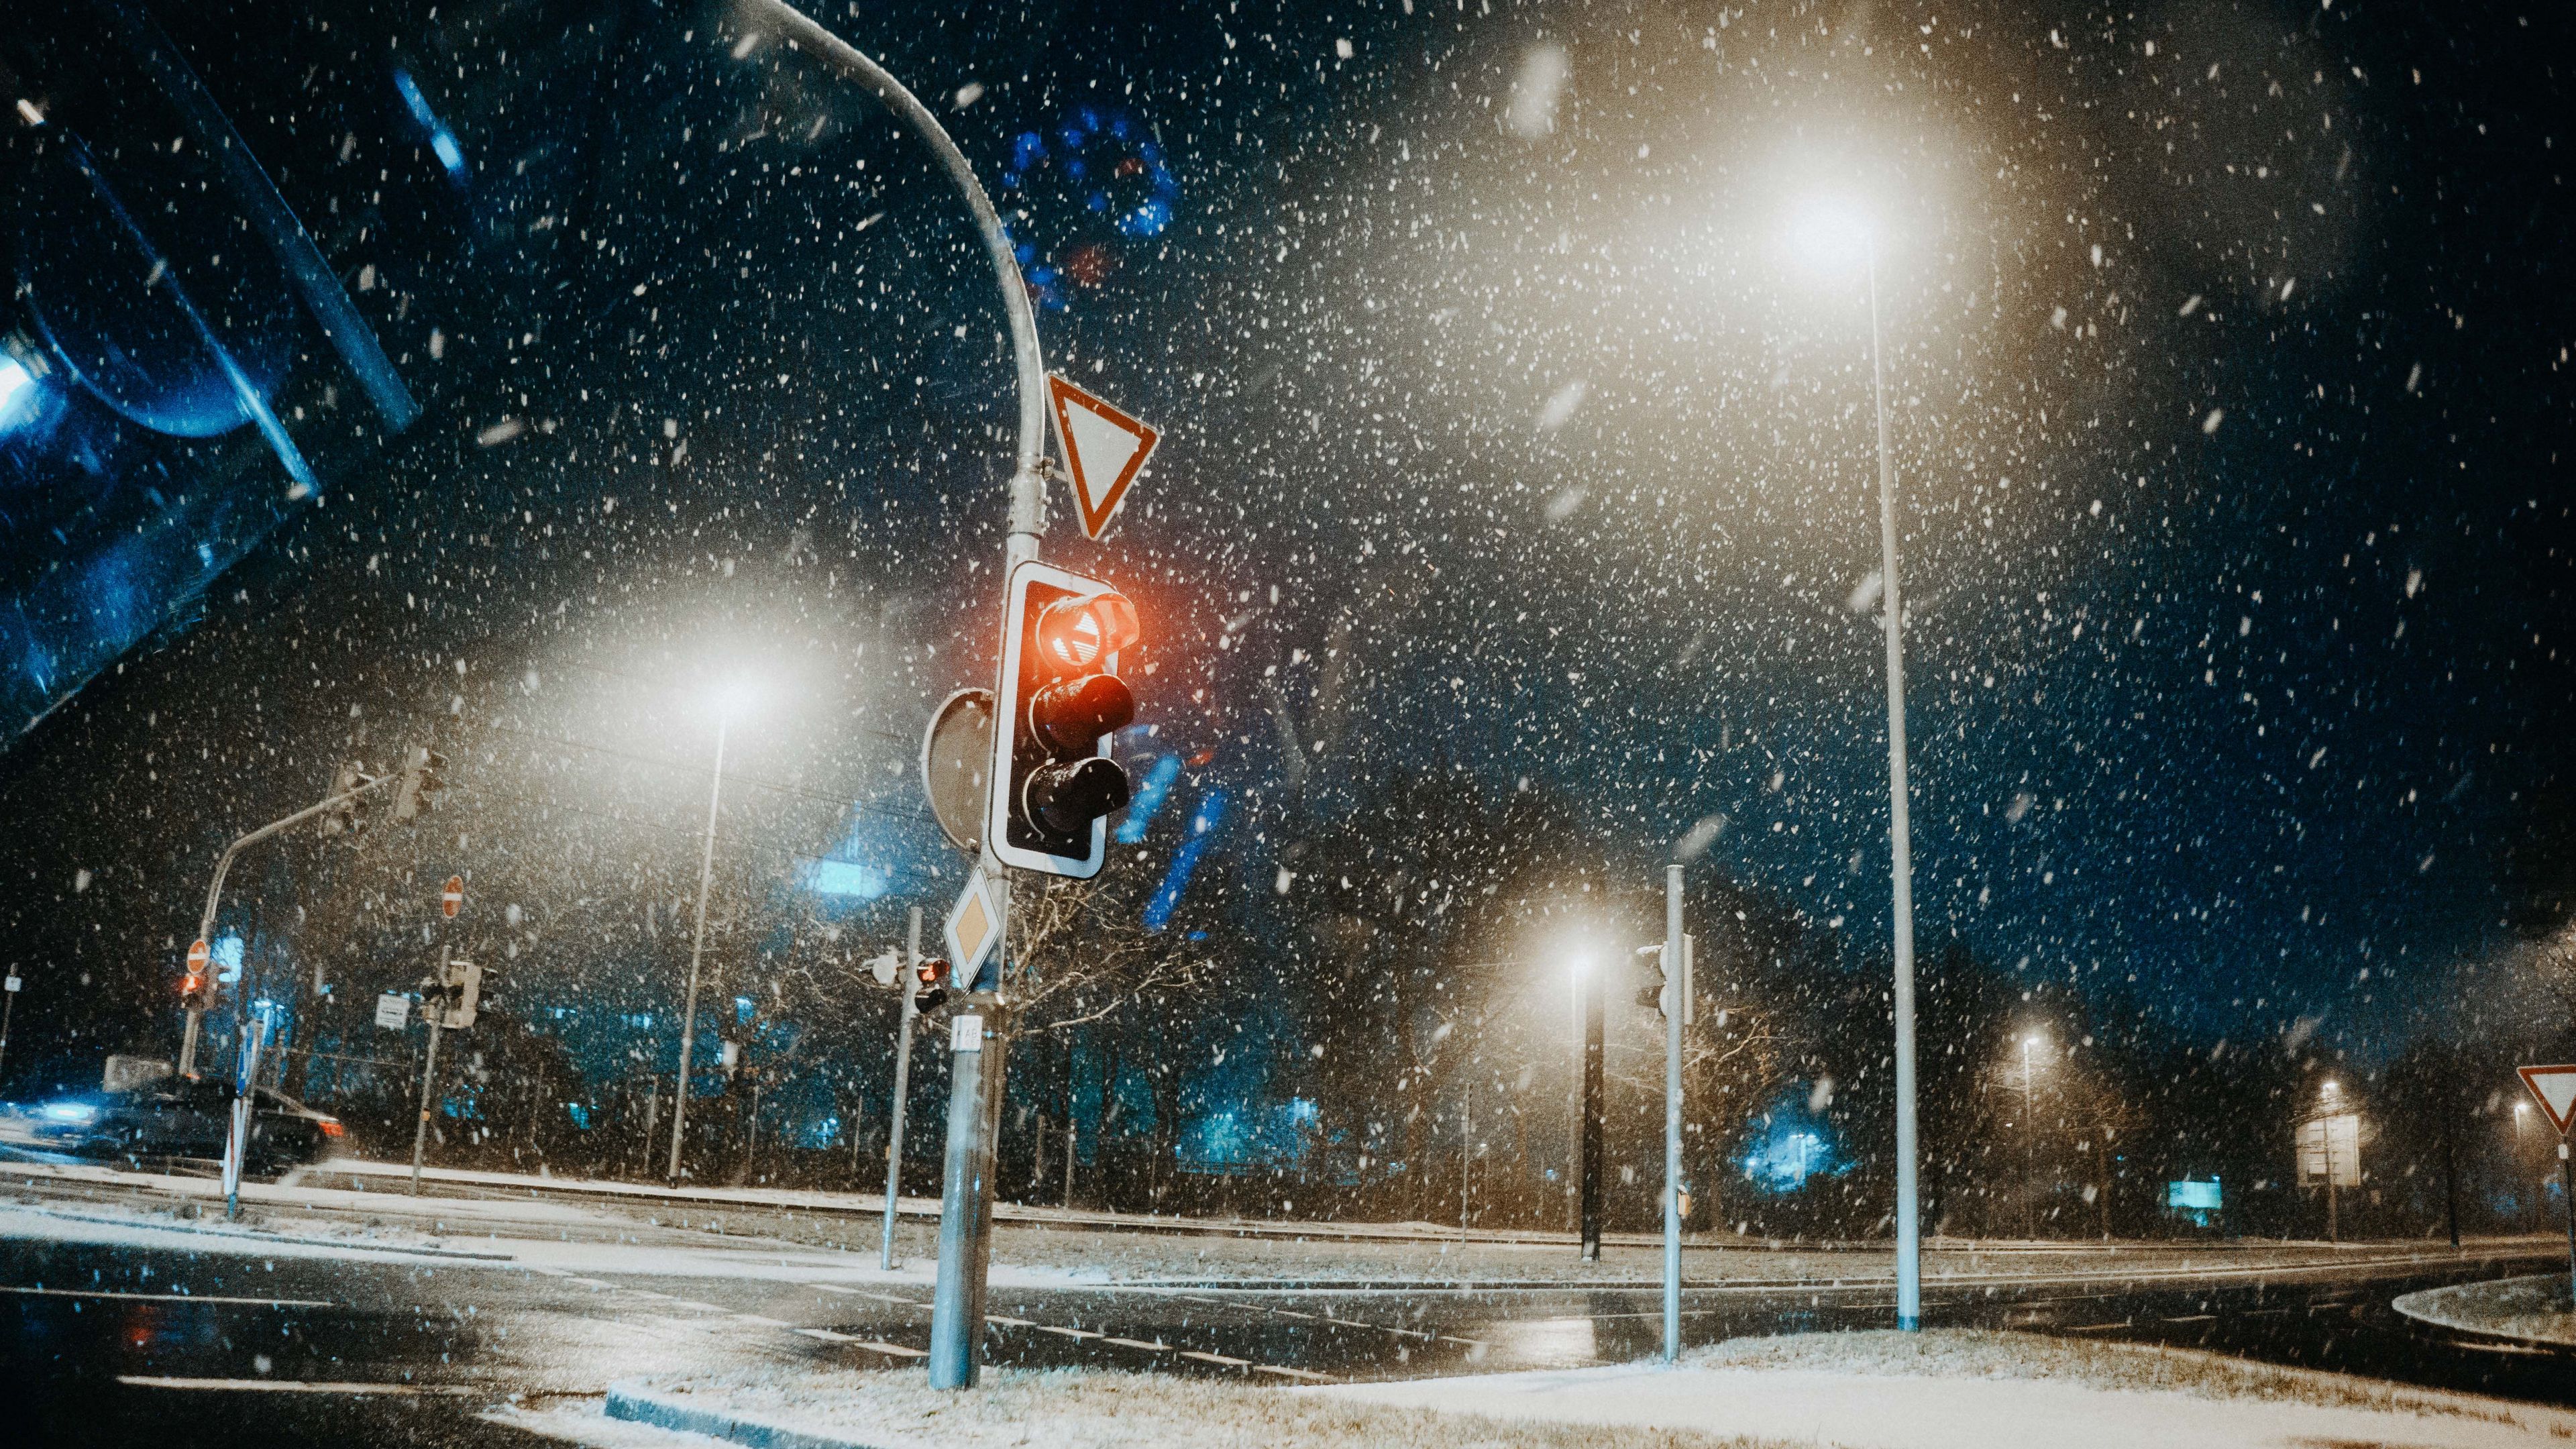 Traffic Light Snow Road mang đến cho bạn cảm giác sự kỳ diệu khi những tia nắng chiếu qua tất cả những tinh thể tuyết trên đường phố. Hình ảnh đẹp mắt này sẽ đưa bạn đến với những cảnh đáng nhớ và điều không ai có thể chối từ. Hãy xem ngay để cảm nhận.